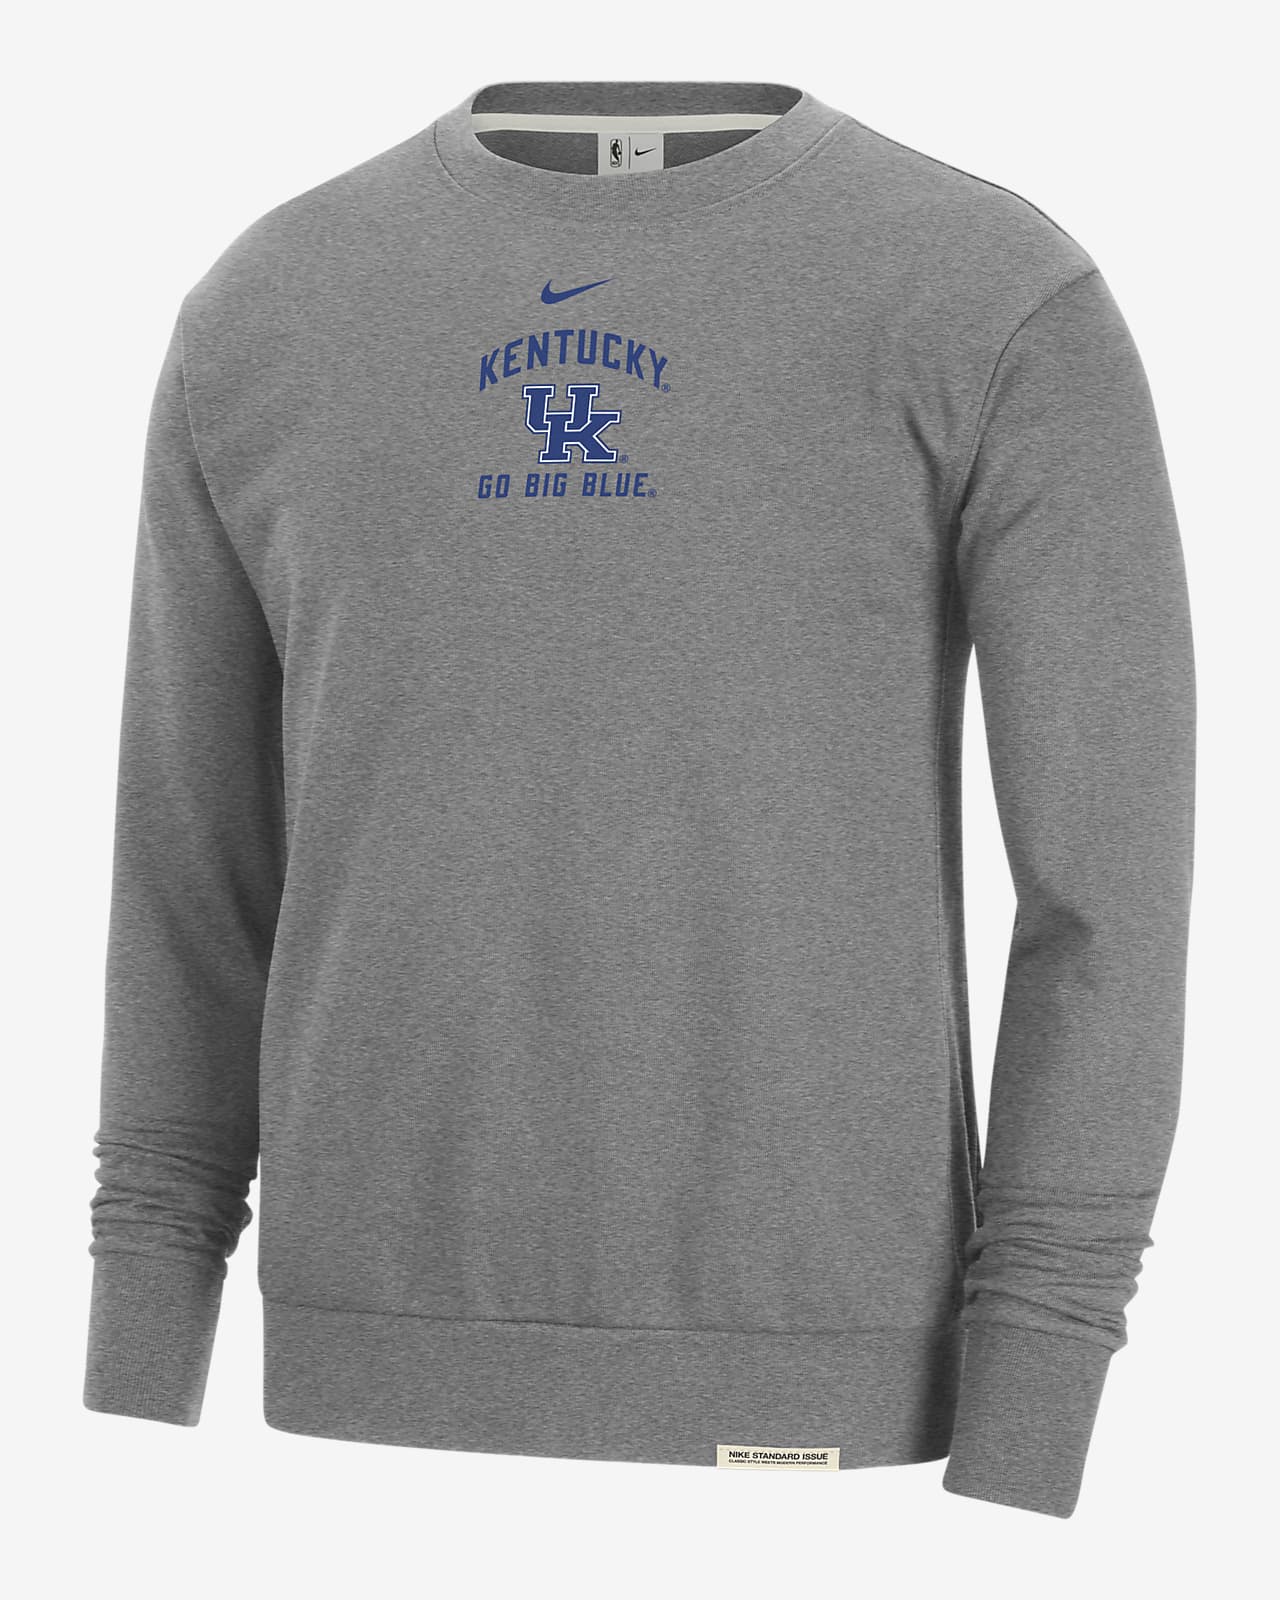 Kentucky Standard Issue Men's Nike College Fleece Crew-Neck Sweatshirt